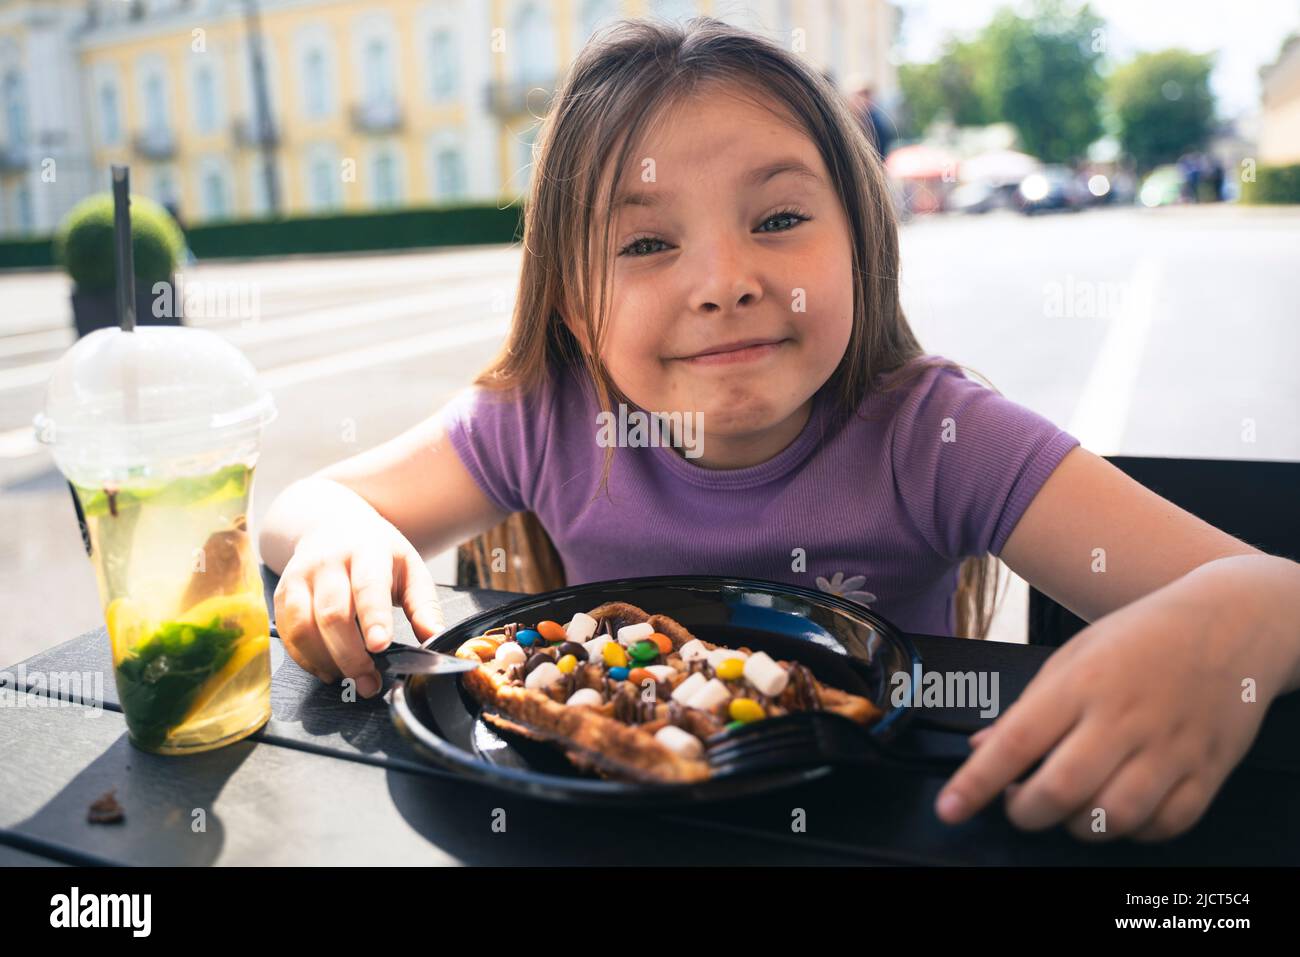 Una ragazza di 8 anni mangia una cialda viennese in un caffè in strada. Foto di alta qualità Foto Stock